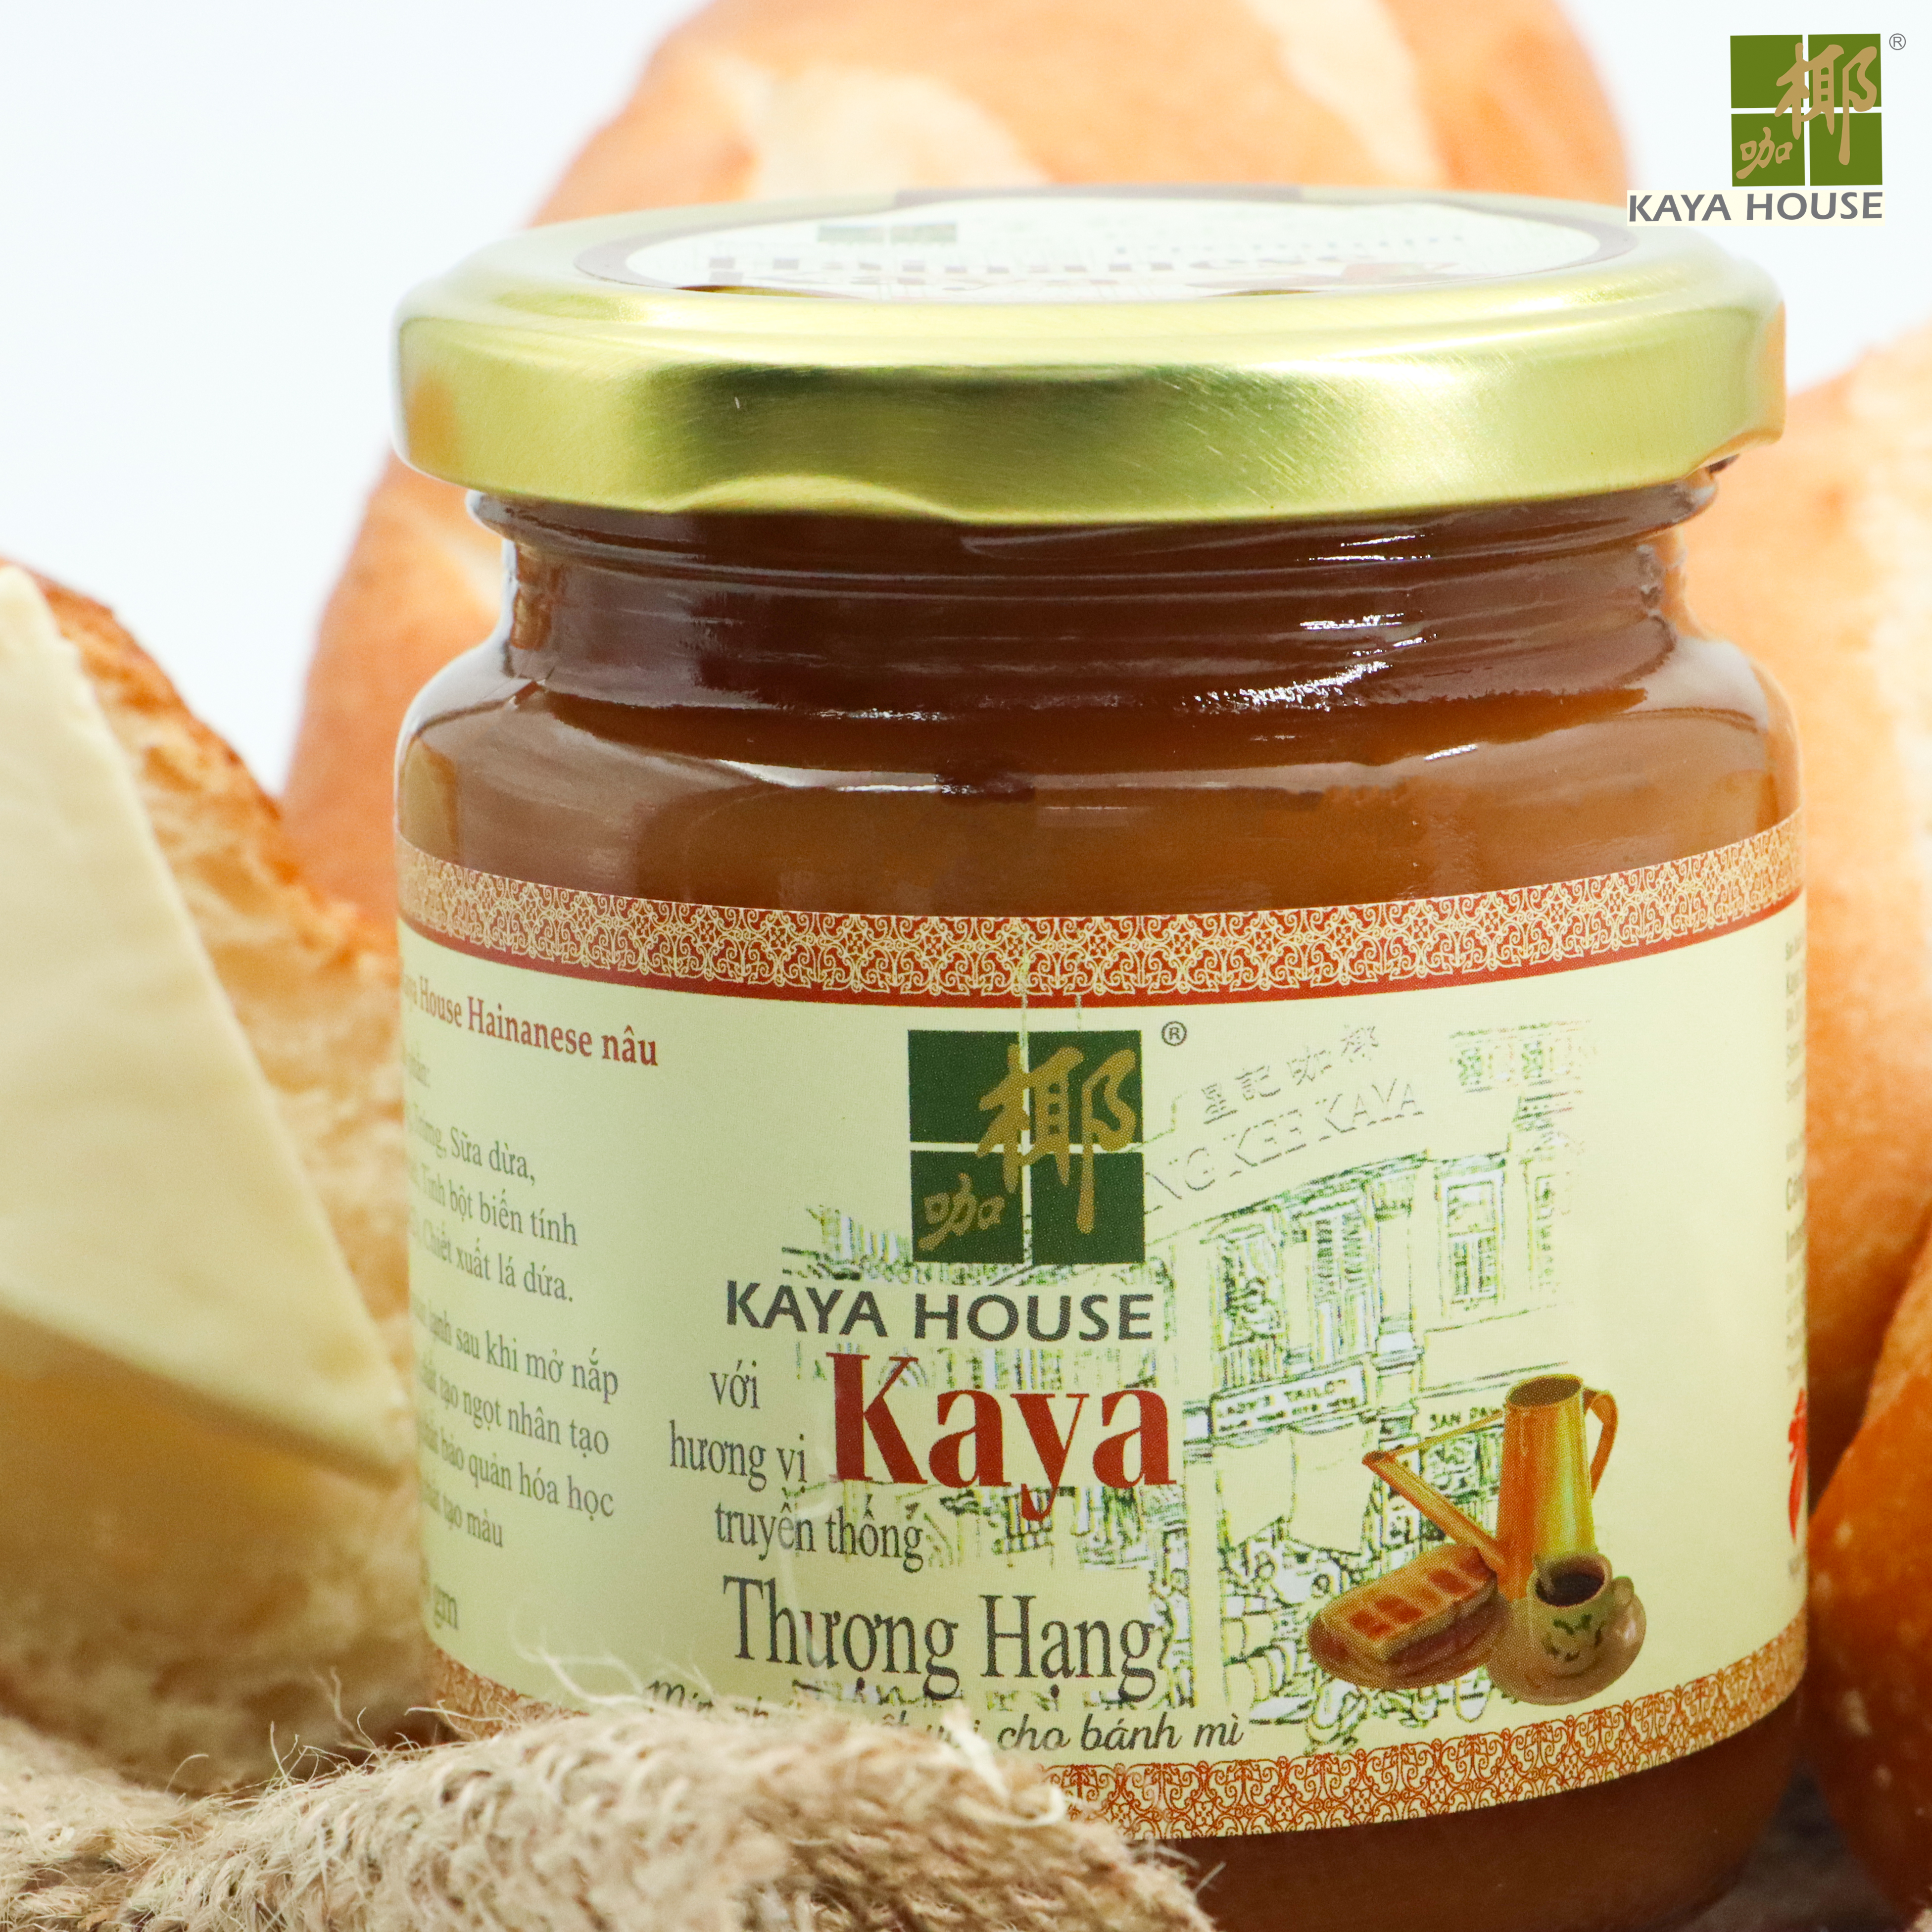 Mứt Kaya Singapore Premium Hainanese hũ 240g - Kaya House - Ăn kèm với Sandwich, làm nguyên liệu nấu ăn